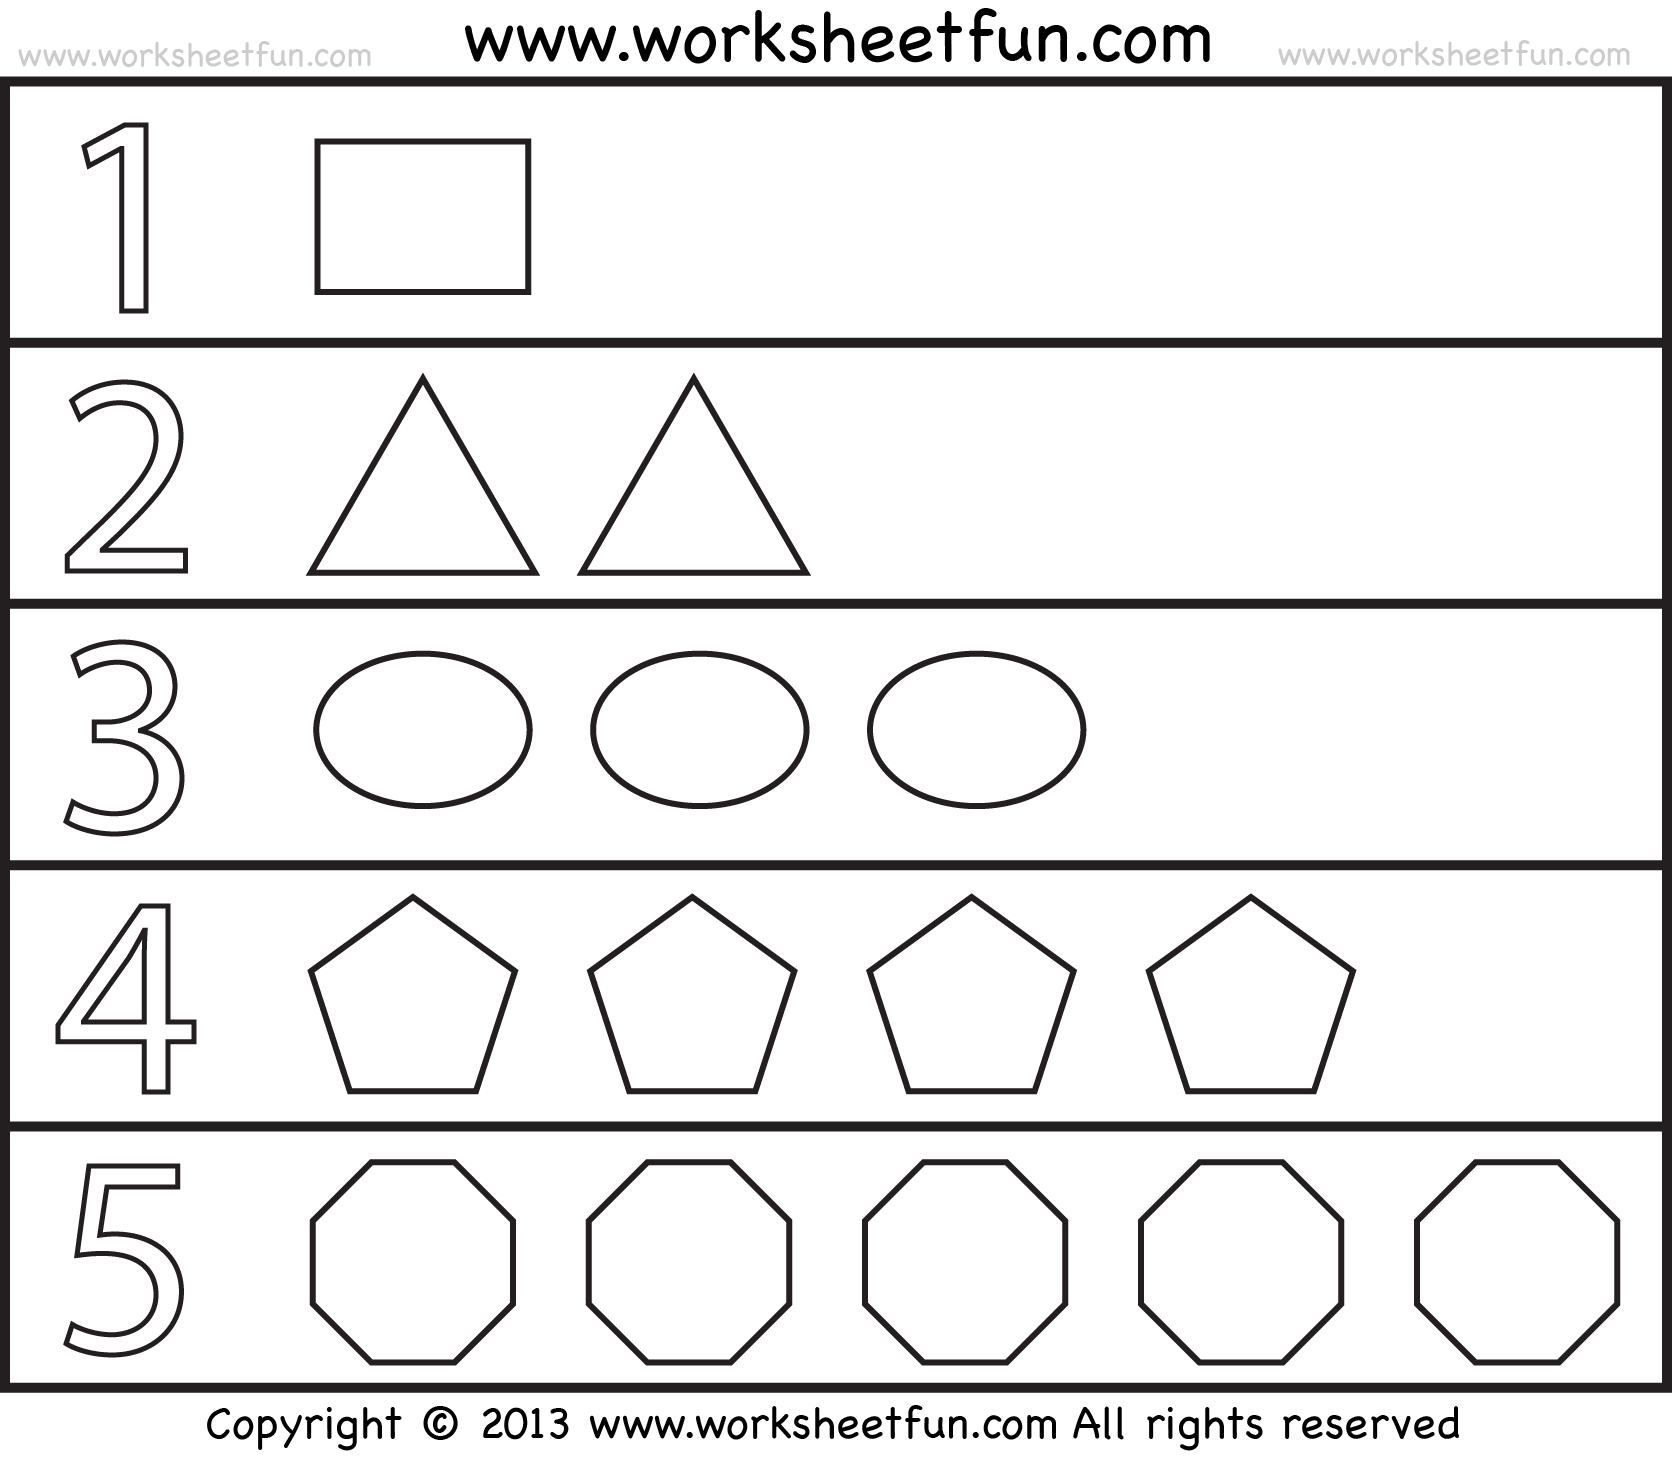 shapes-and-numbers-1-worksheet-free-printable-worksheets-worksheetfun